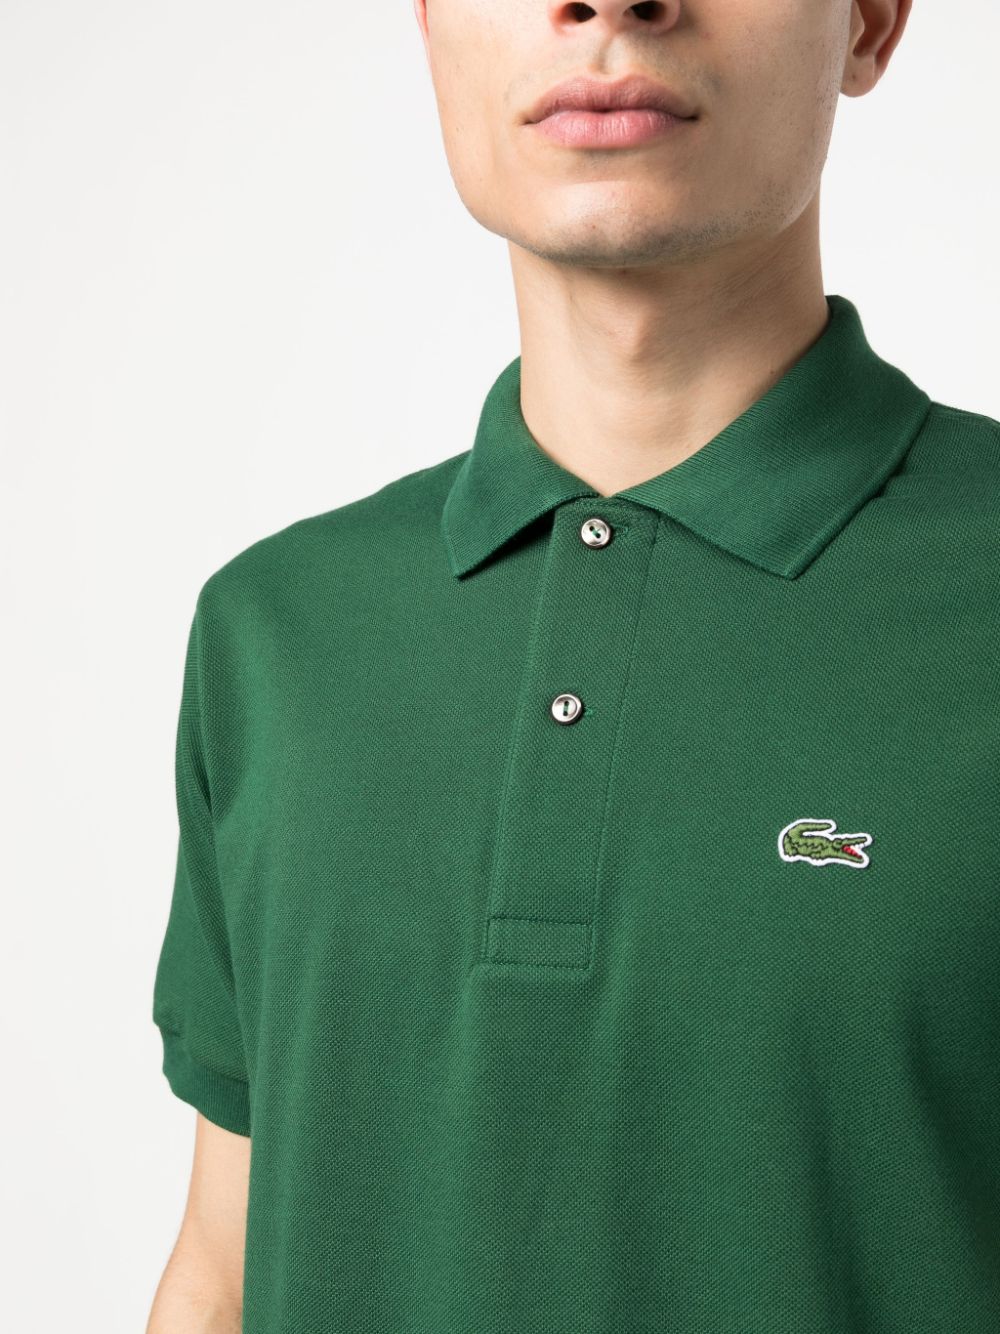 regular fit green polo shirt